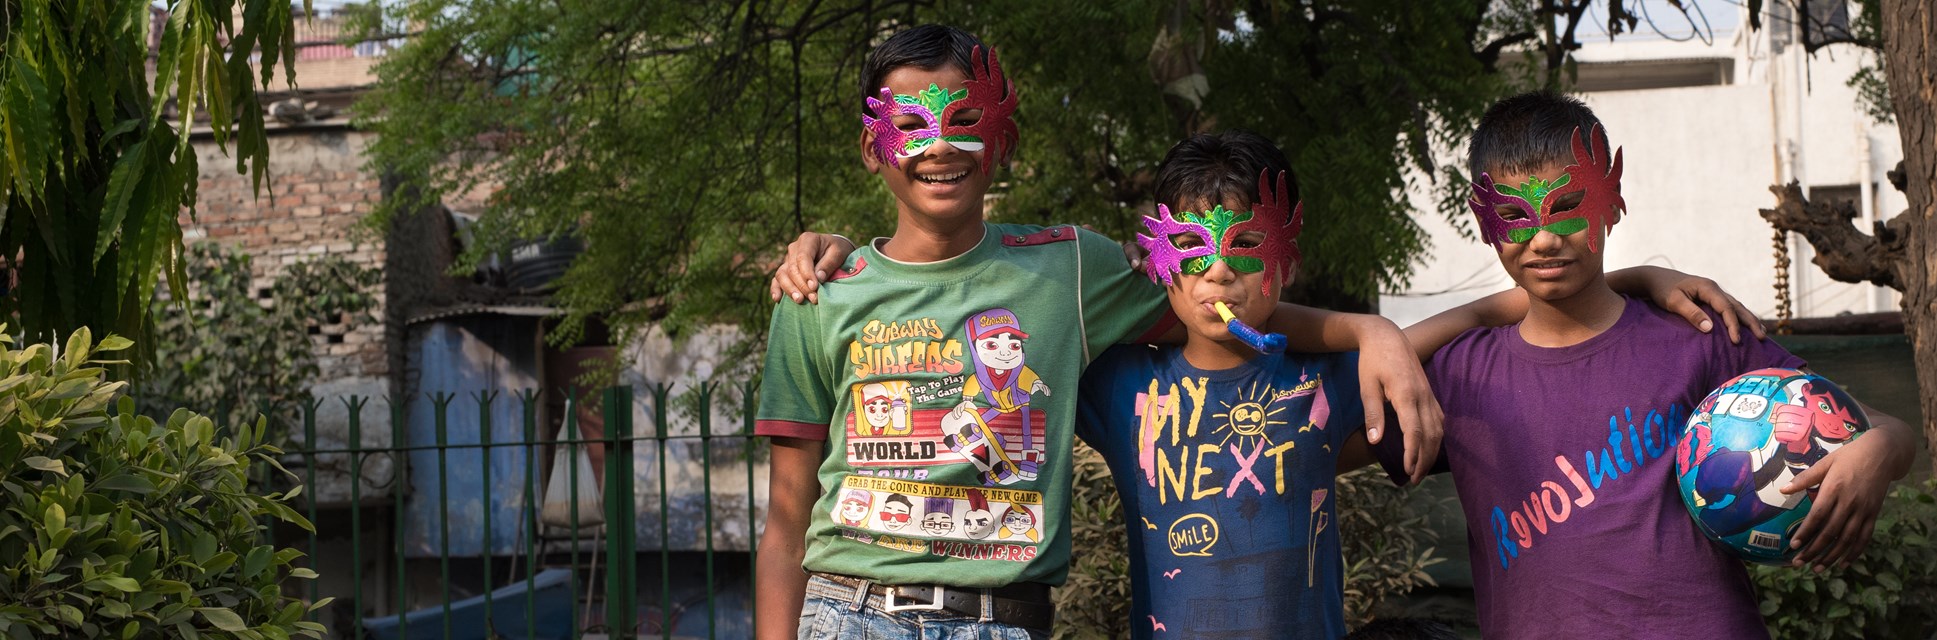 Boys with masks on celebrating RCI